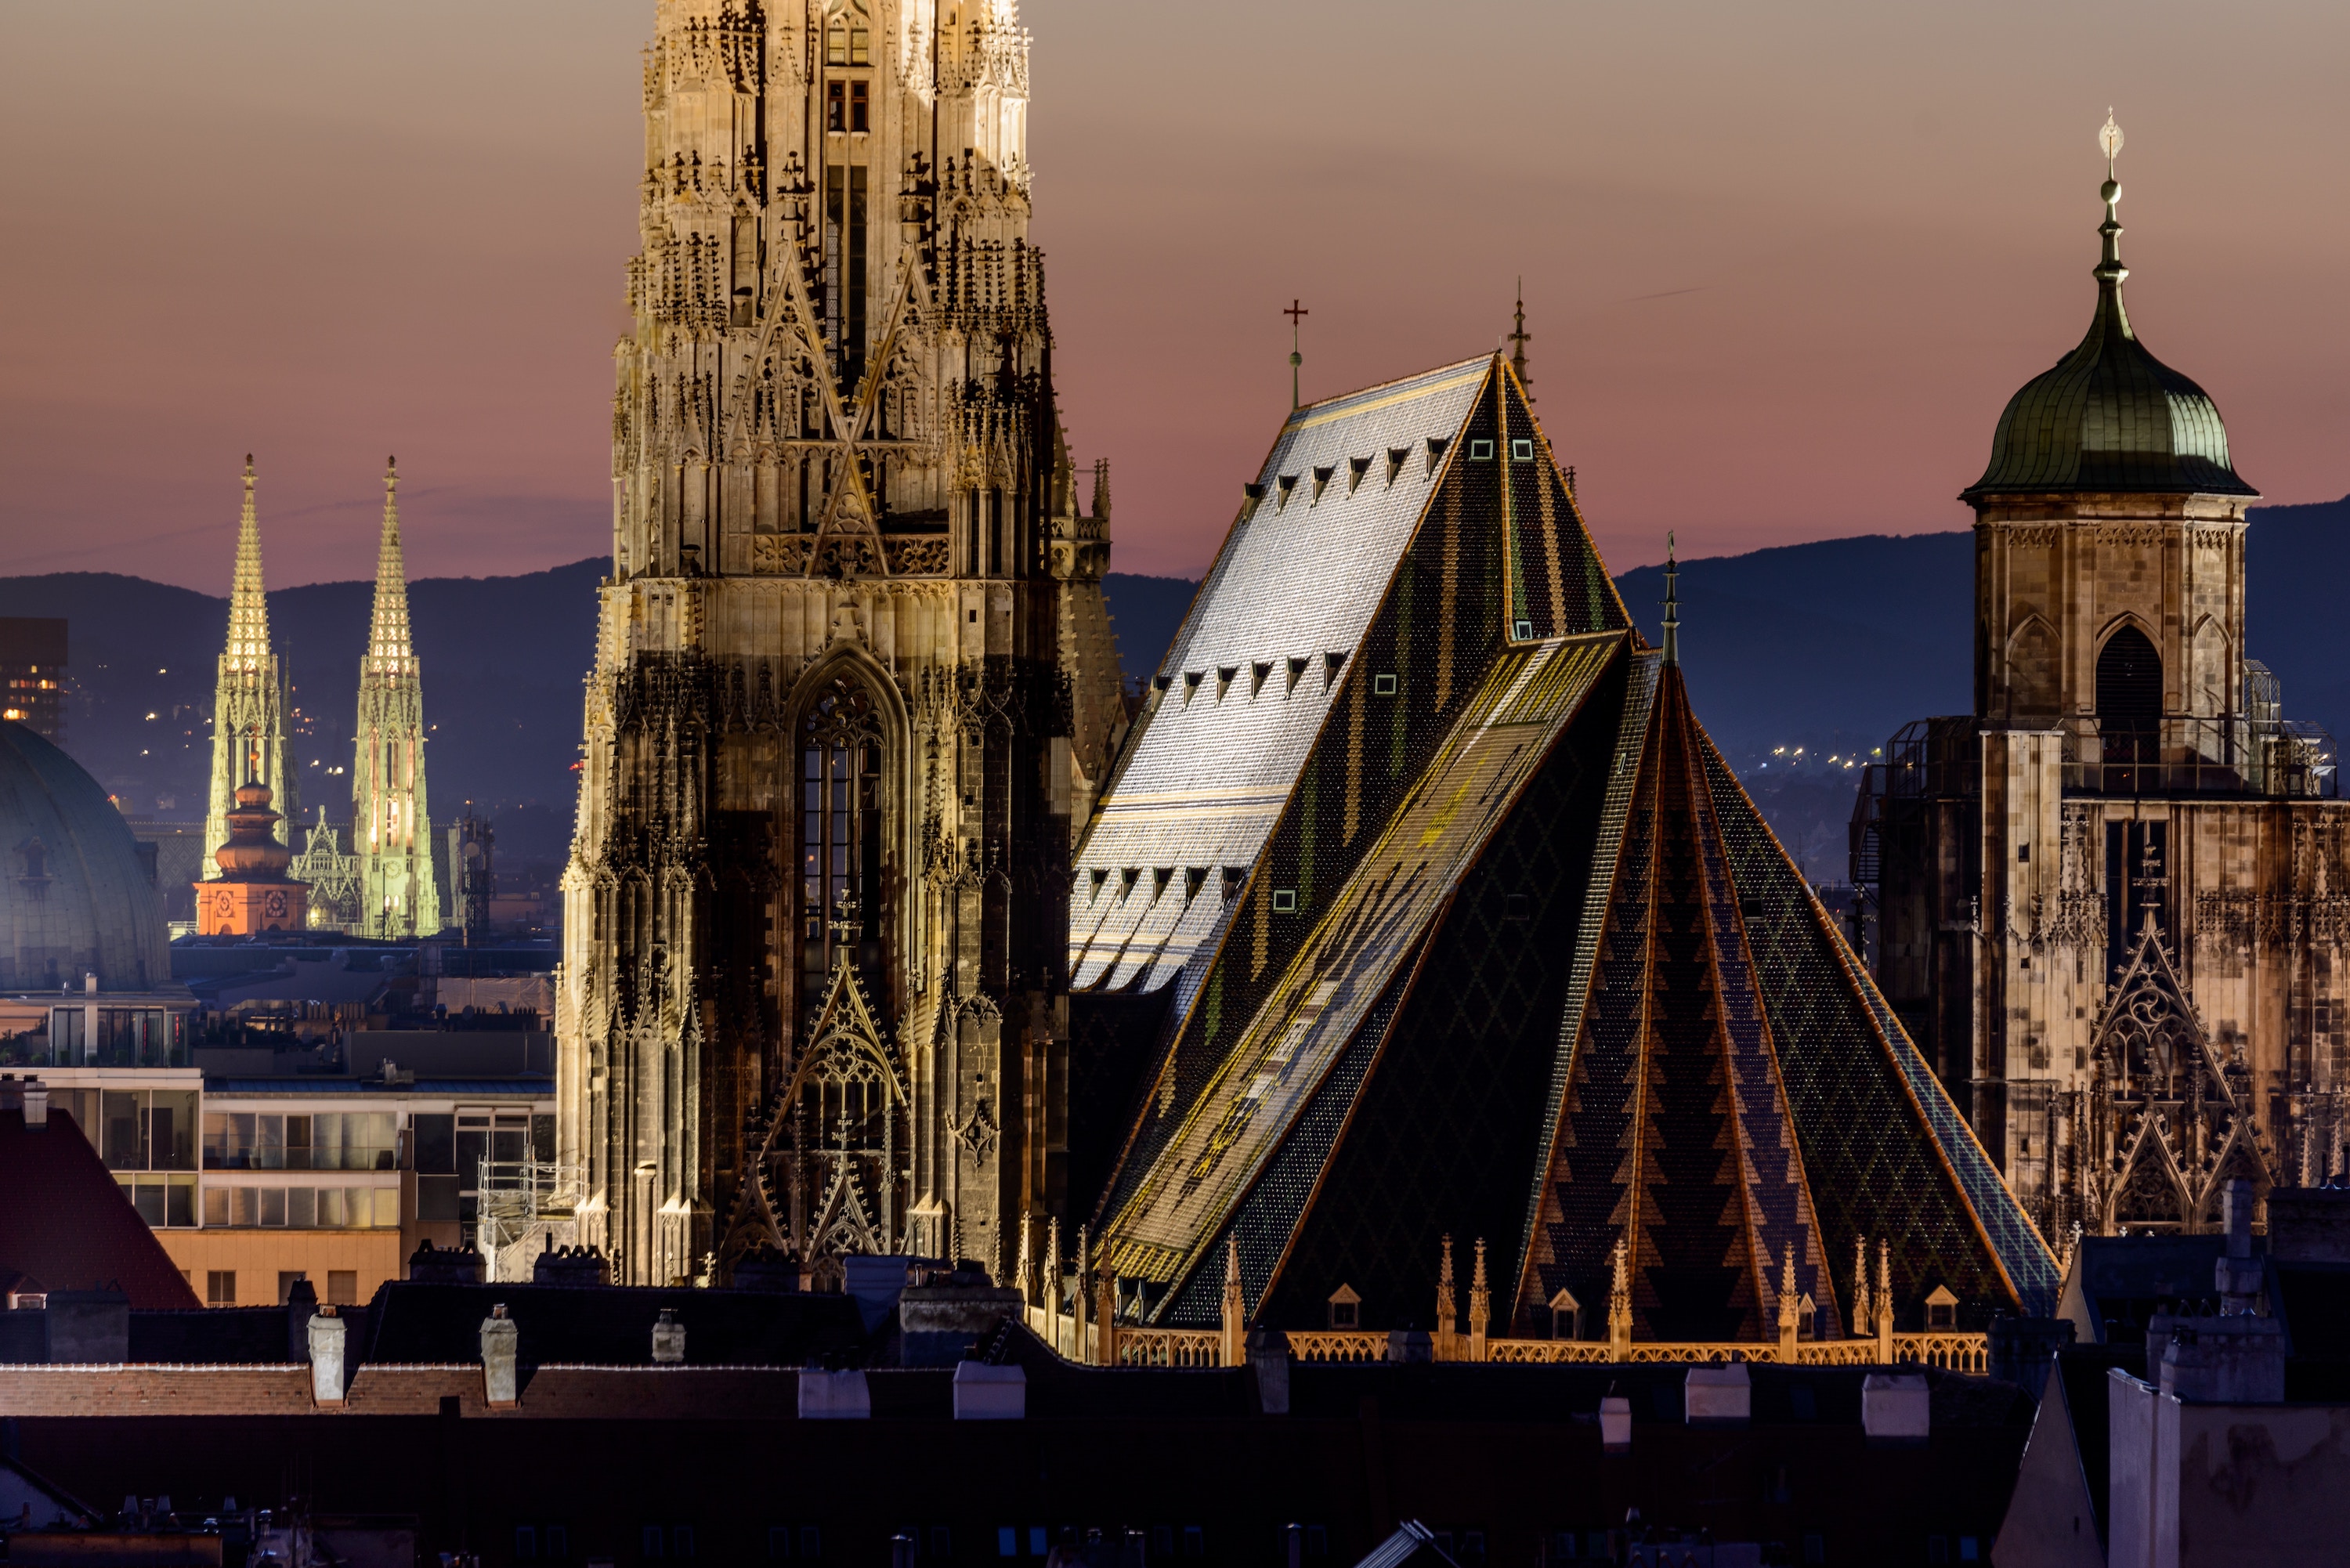 Cathedral in Vienna, Austria